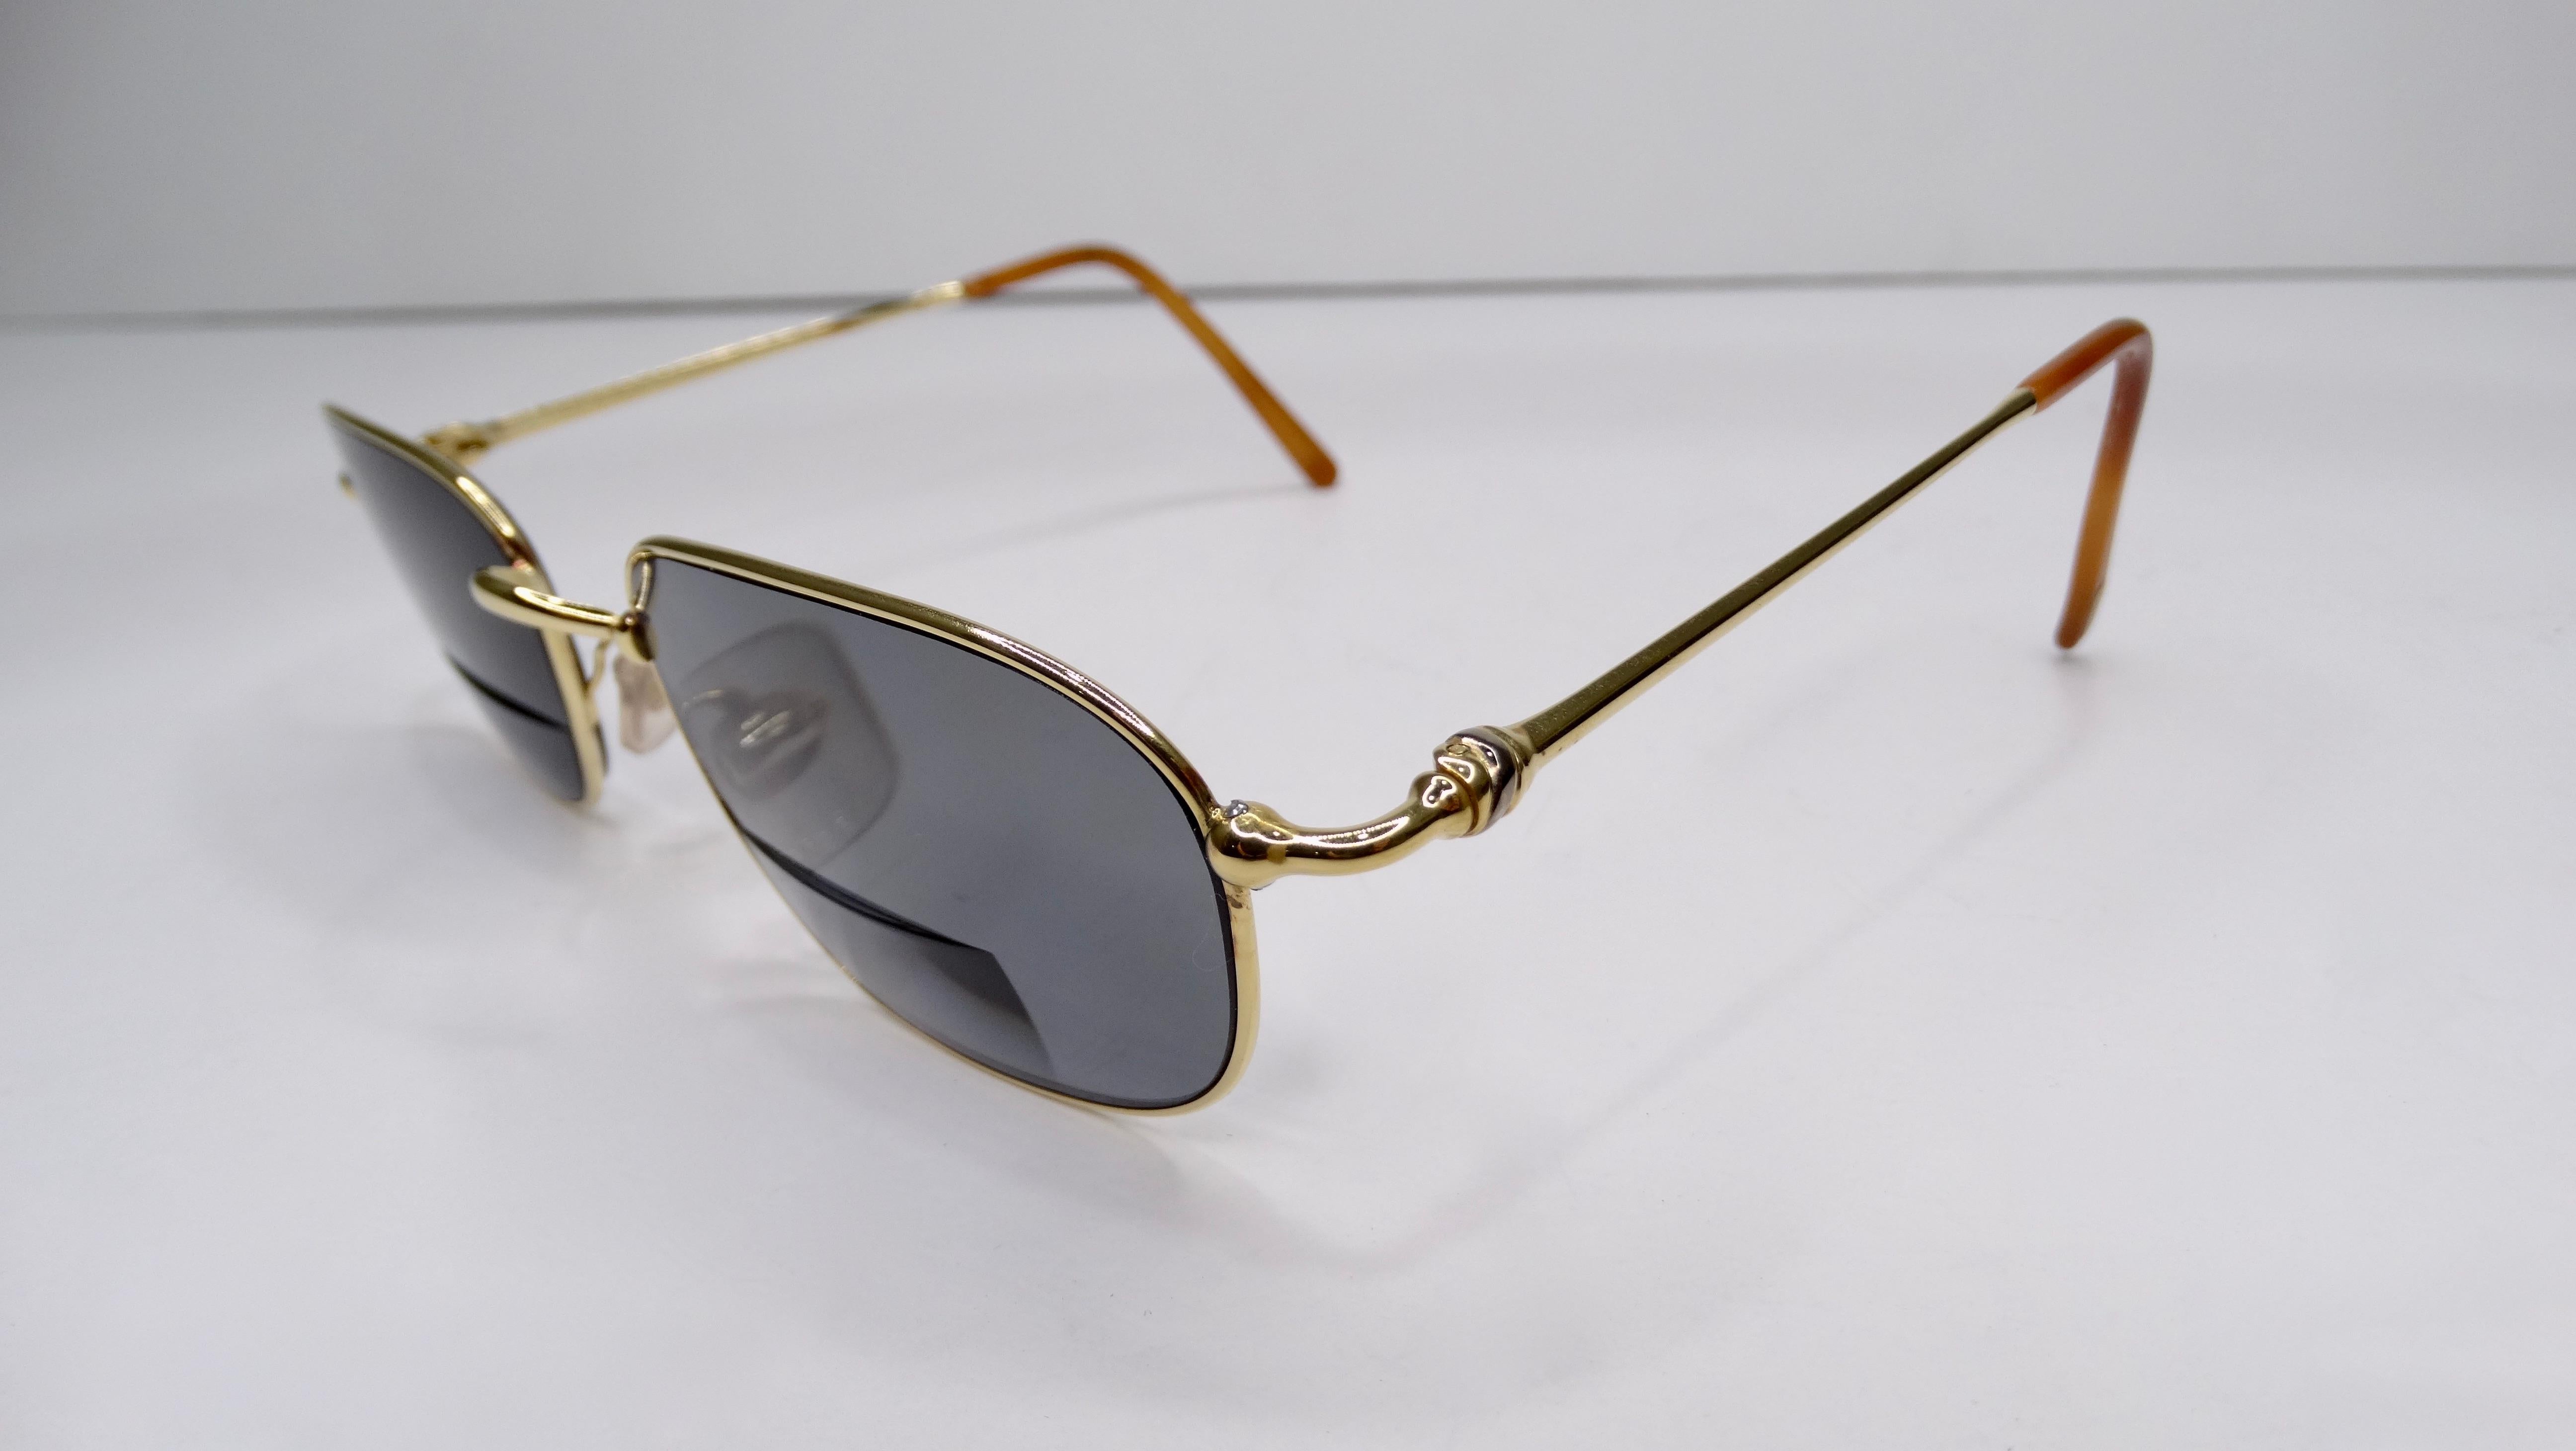 Préféré des amateurs de bijoux et de mode, Cartier est toujours un classique ! Circa 1980, ces lunettes de soleil présentent une monture bicolore argentée et plaquée or 18 carats avec un motif noué sur les branches. Les verres de ces lunettes de